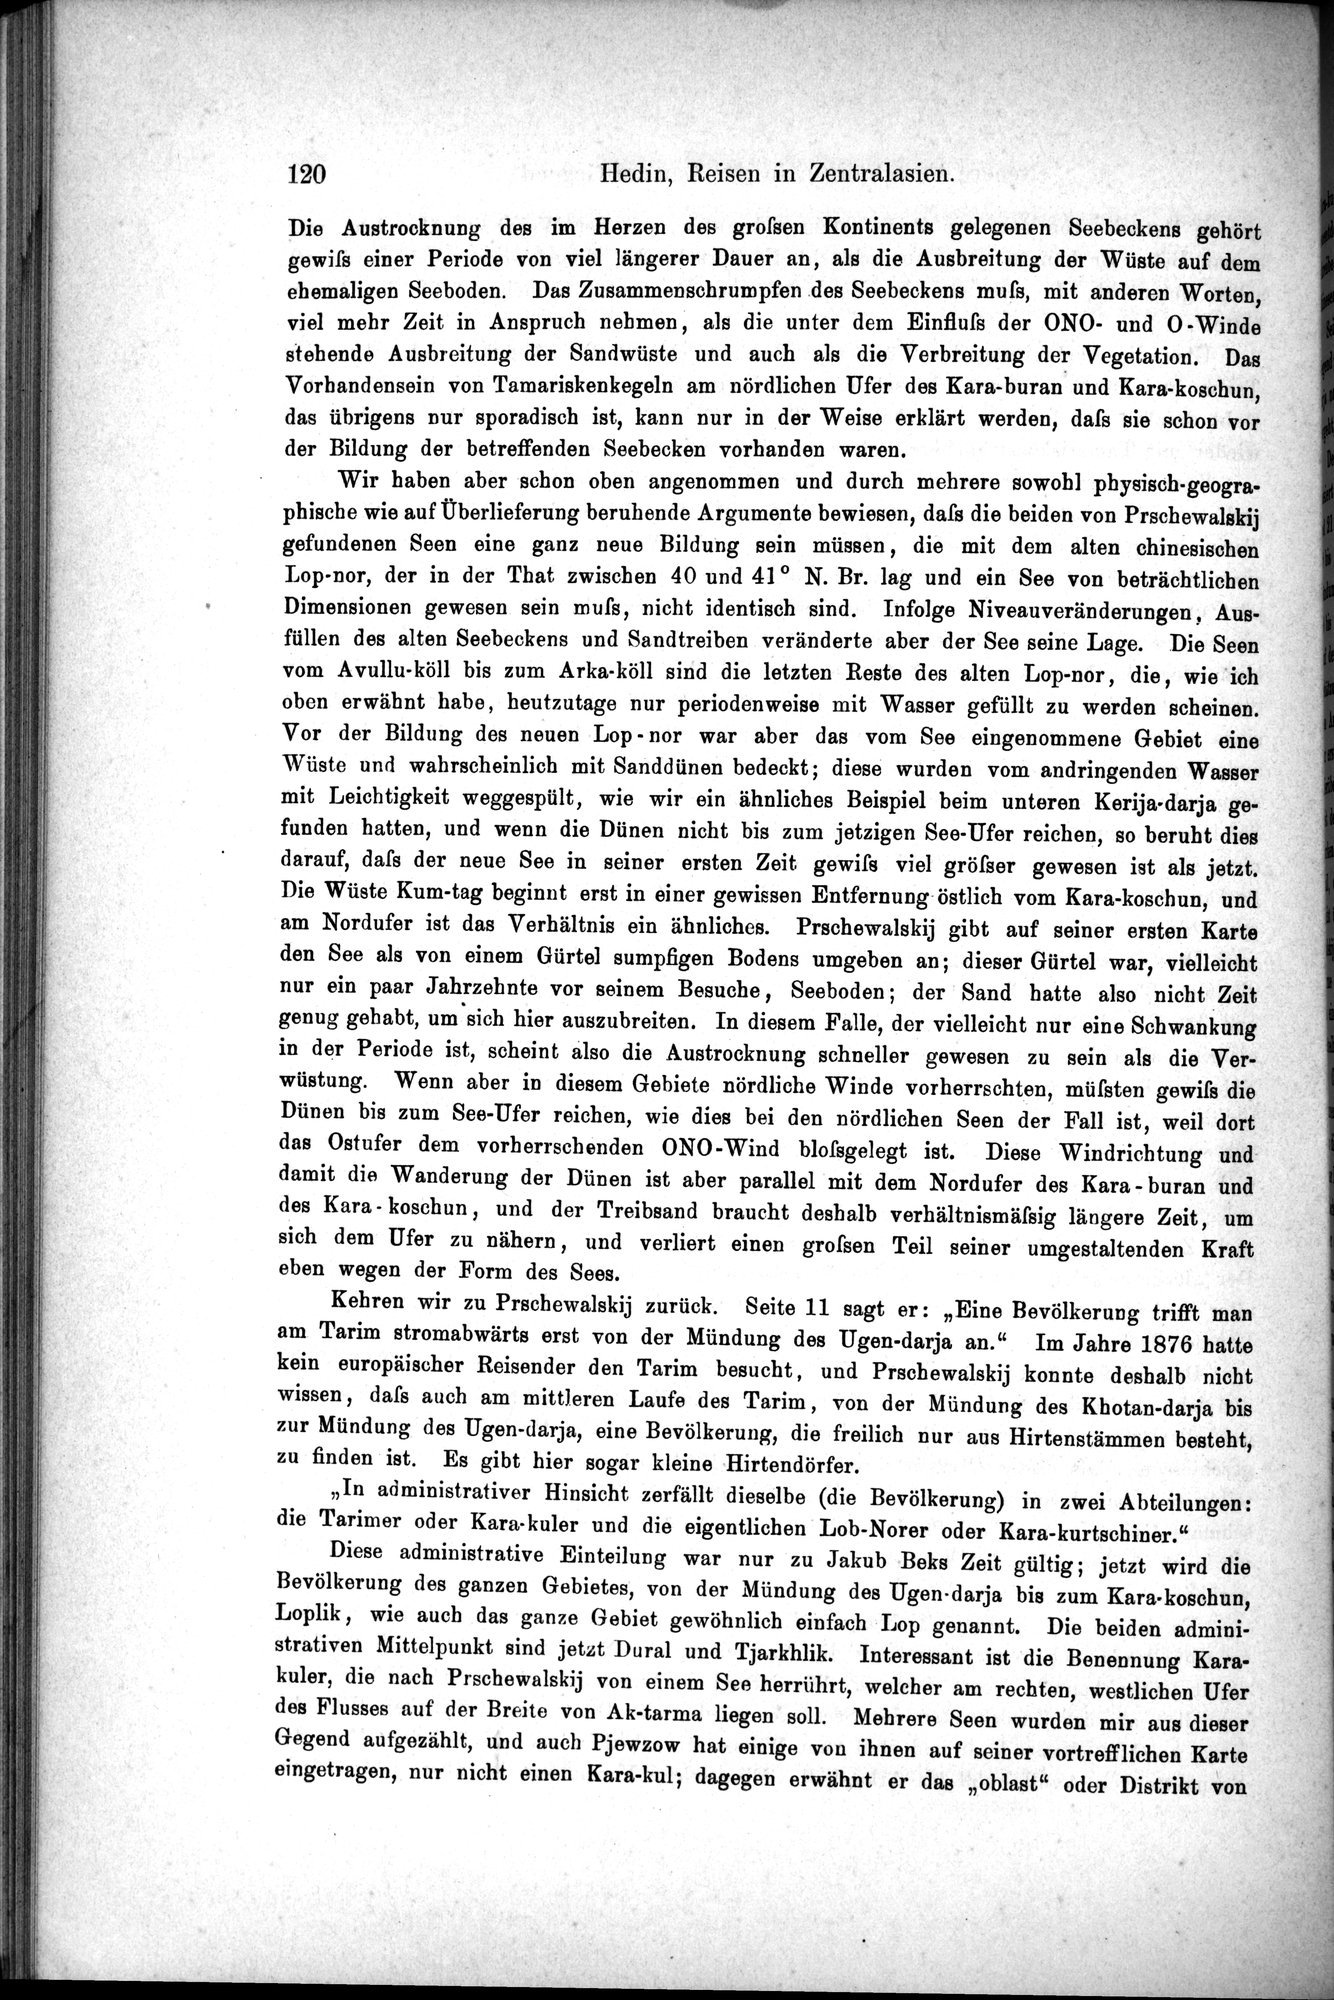 Die Geographische-Wissenschaftlichen Ergebnisse meiner Reisen in Zentralasien, 1894-1897 : vol.1 / Page 132 (Grayscale High Resolution Image)